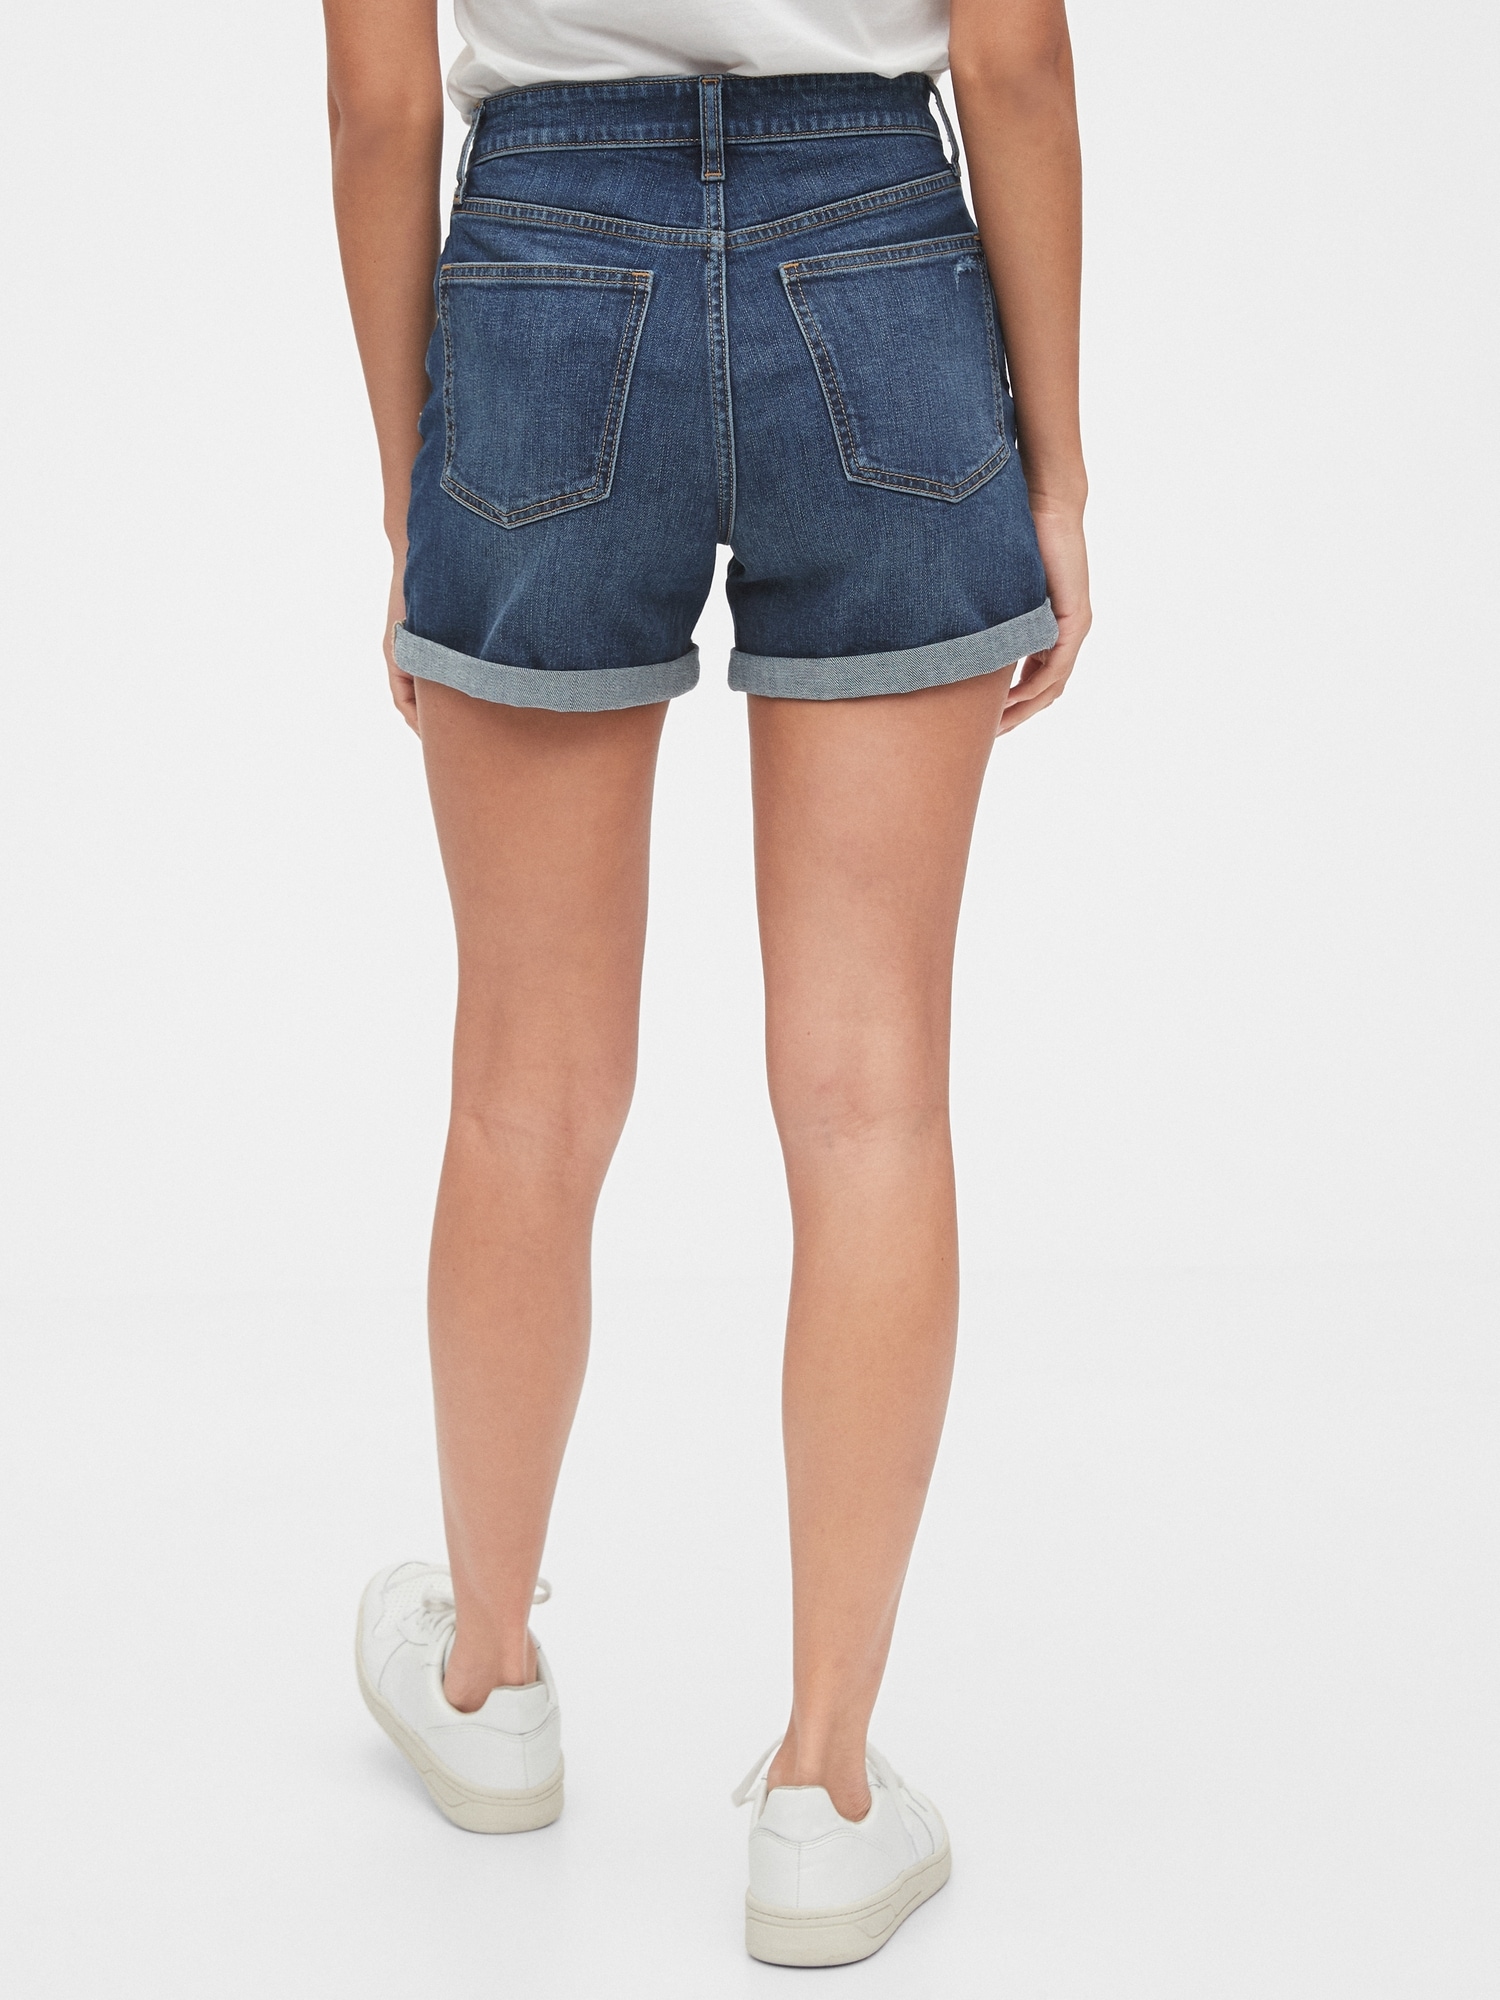 jean shorts gap